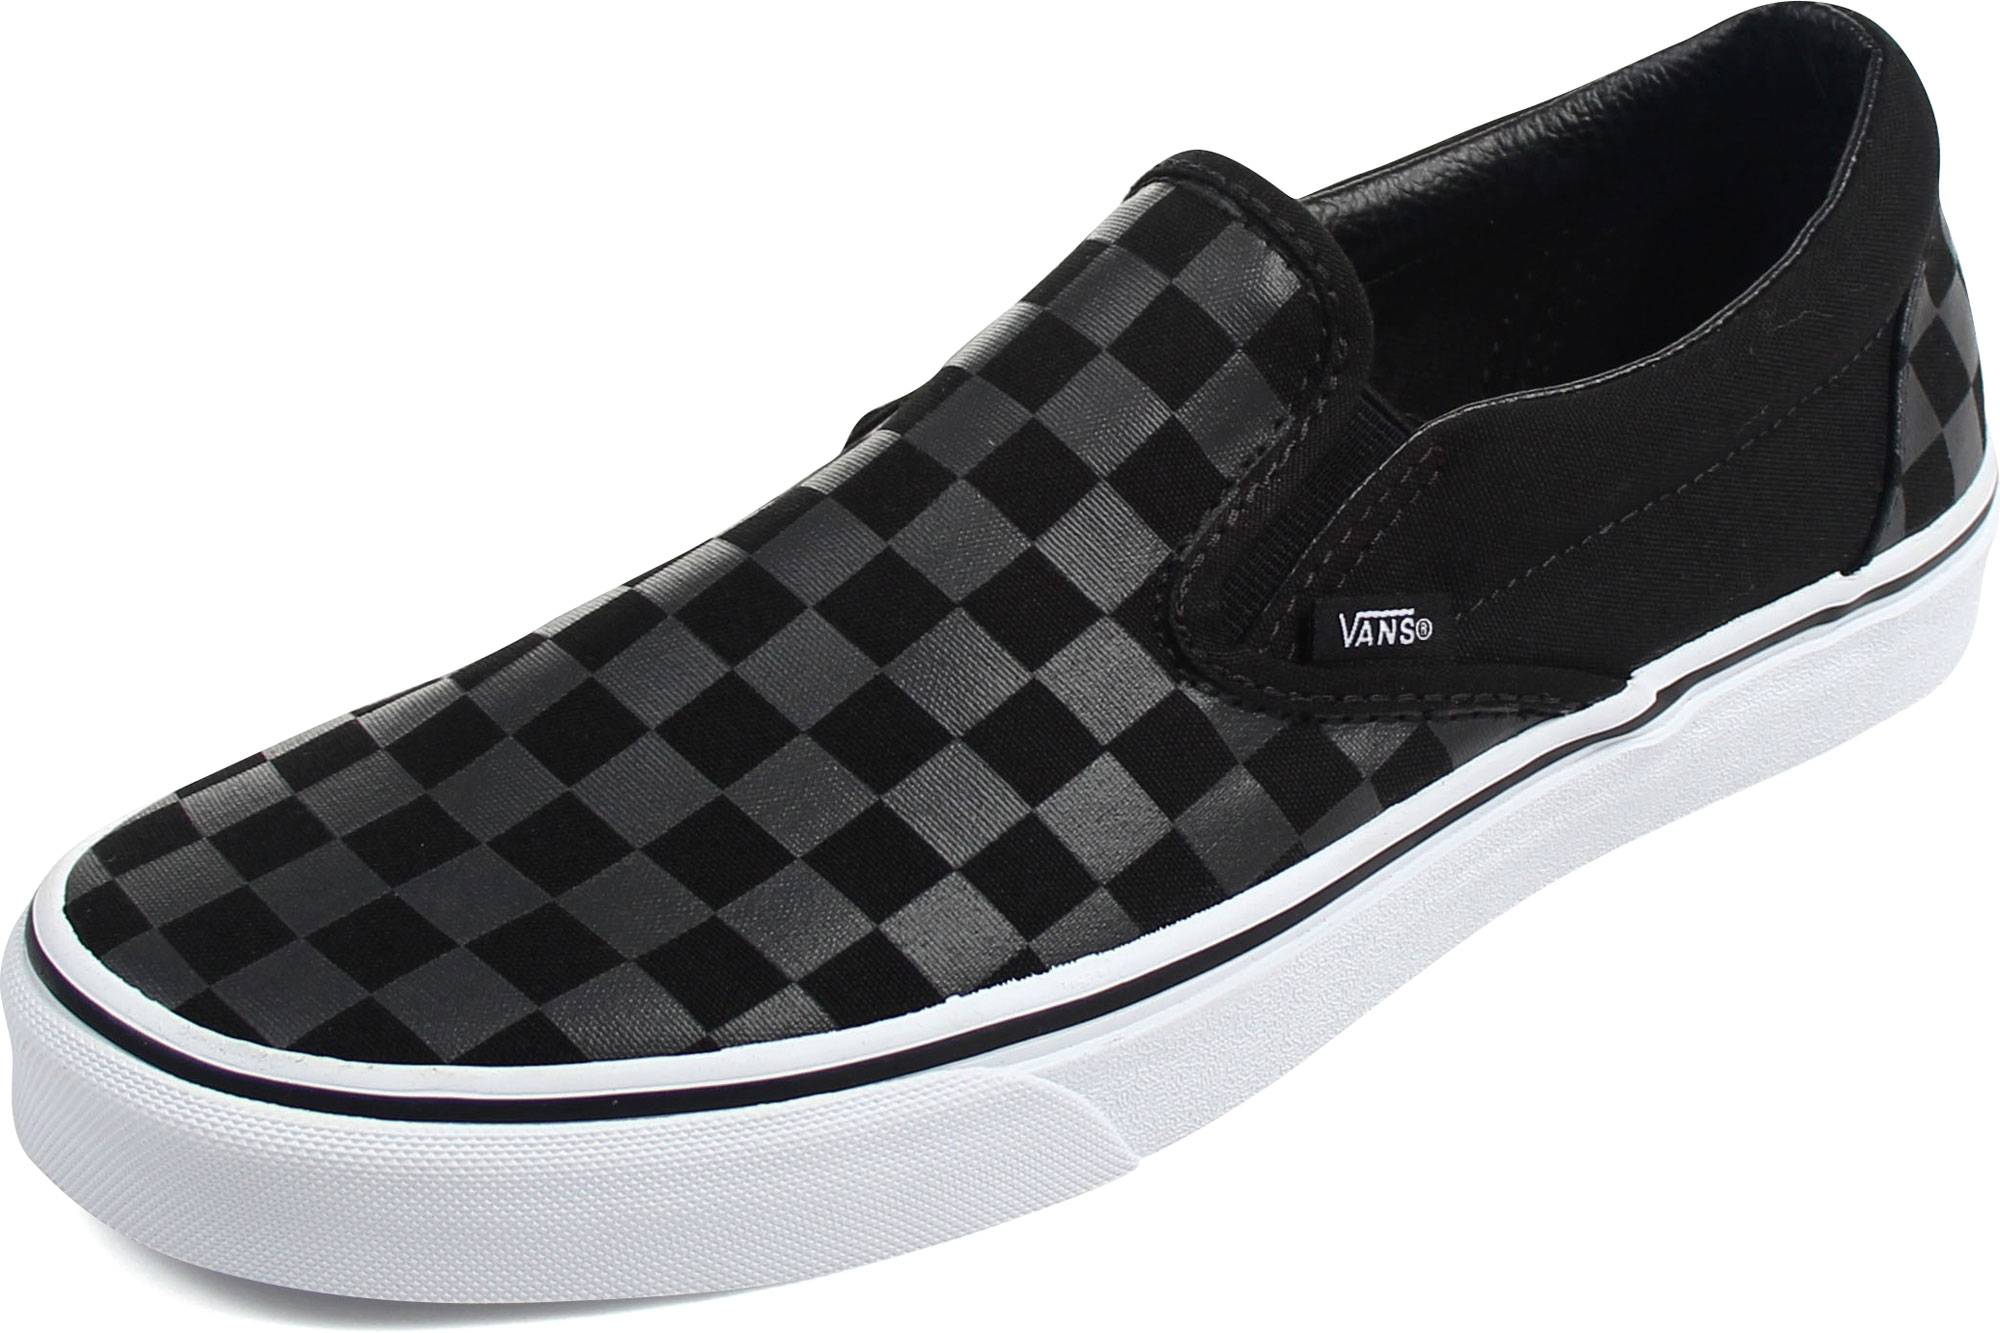 Vans - Unisex-Adult Classic Slip-On Shoes